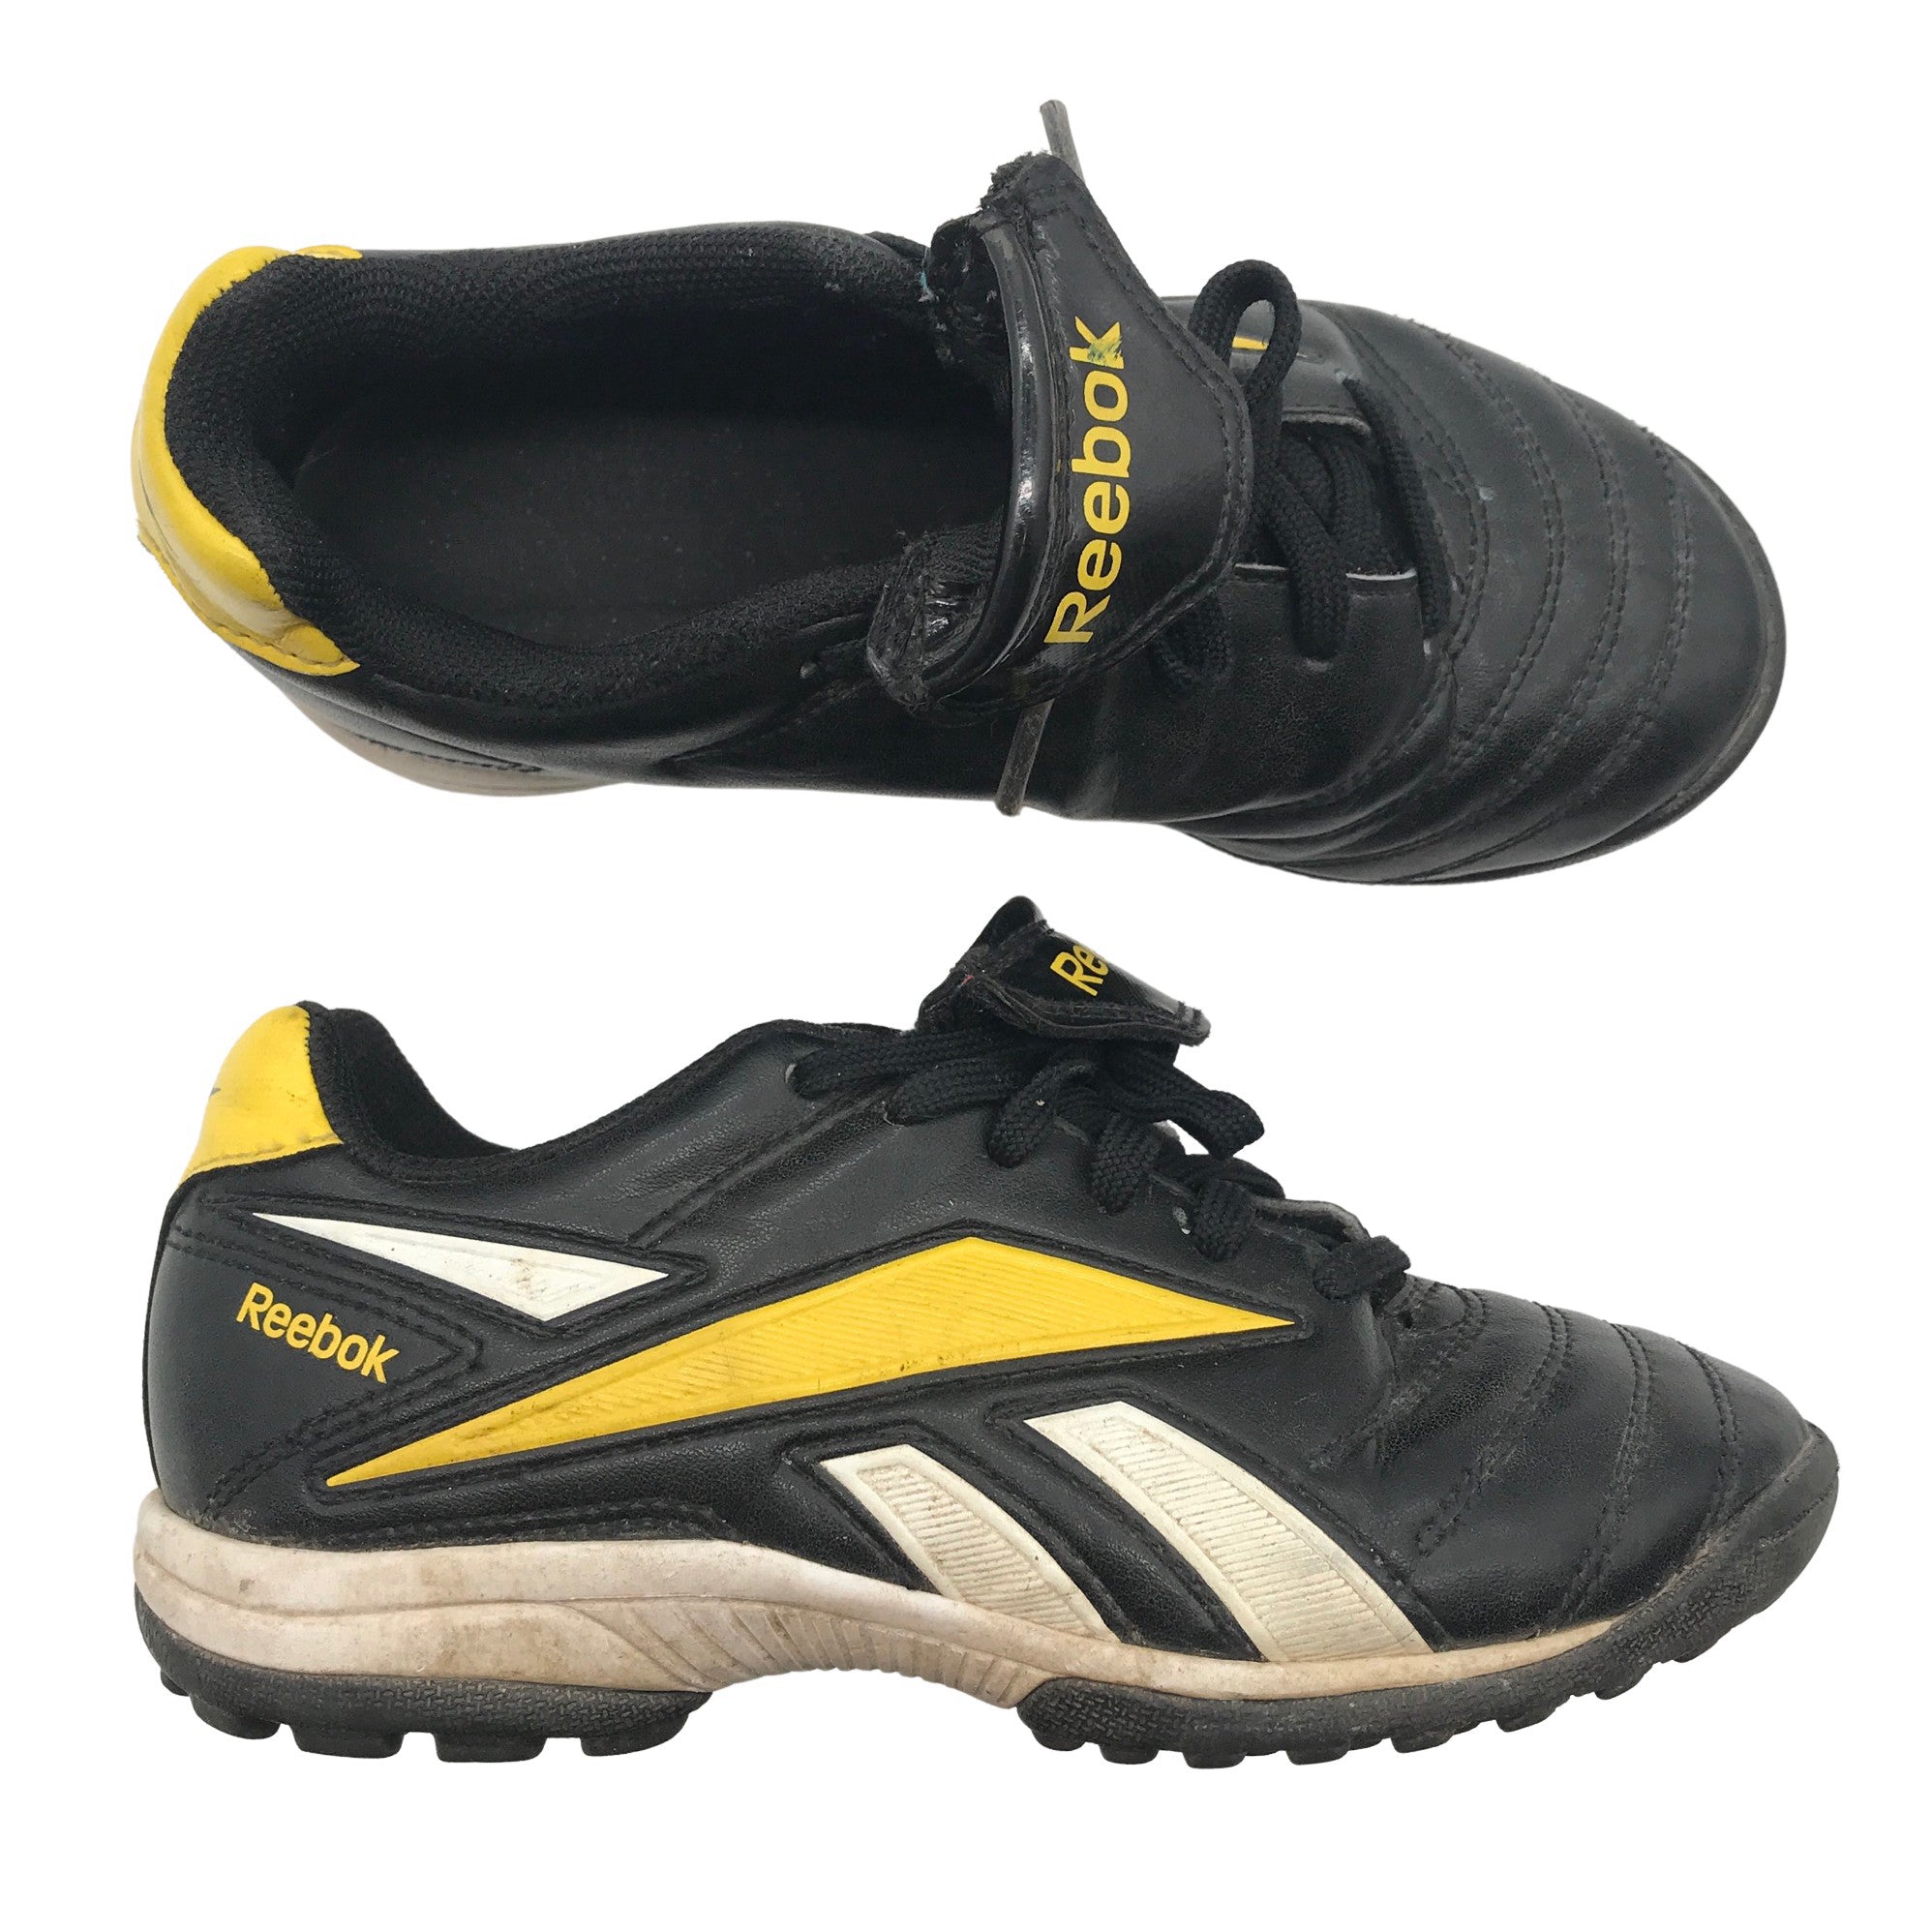 Unisex Reebok Football boots, size 31 (Black) |